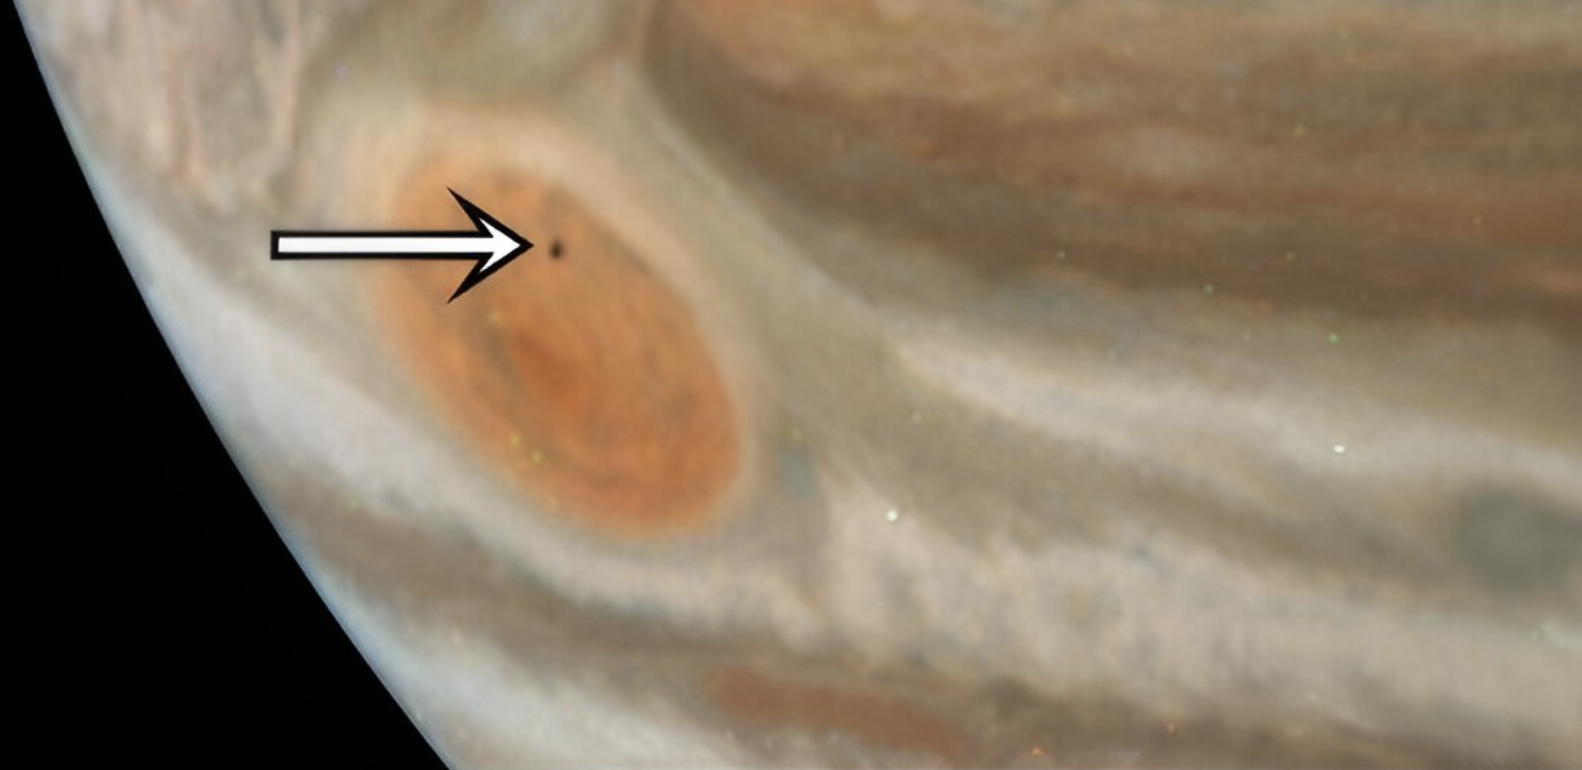 Nova fotografija prikazuje mali Jupiterov mjesec Amalteja. Izvor: NASA/JPL-Caltech/SwRI/MSSS. Obrada slike: Gerald Eichstädt.